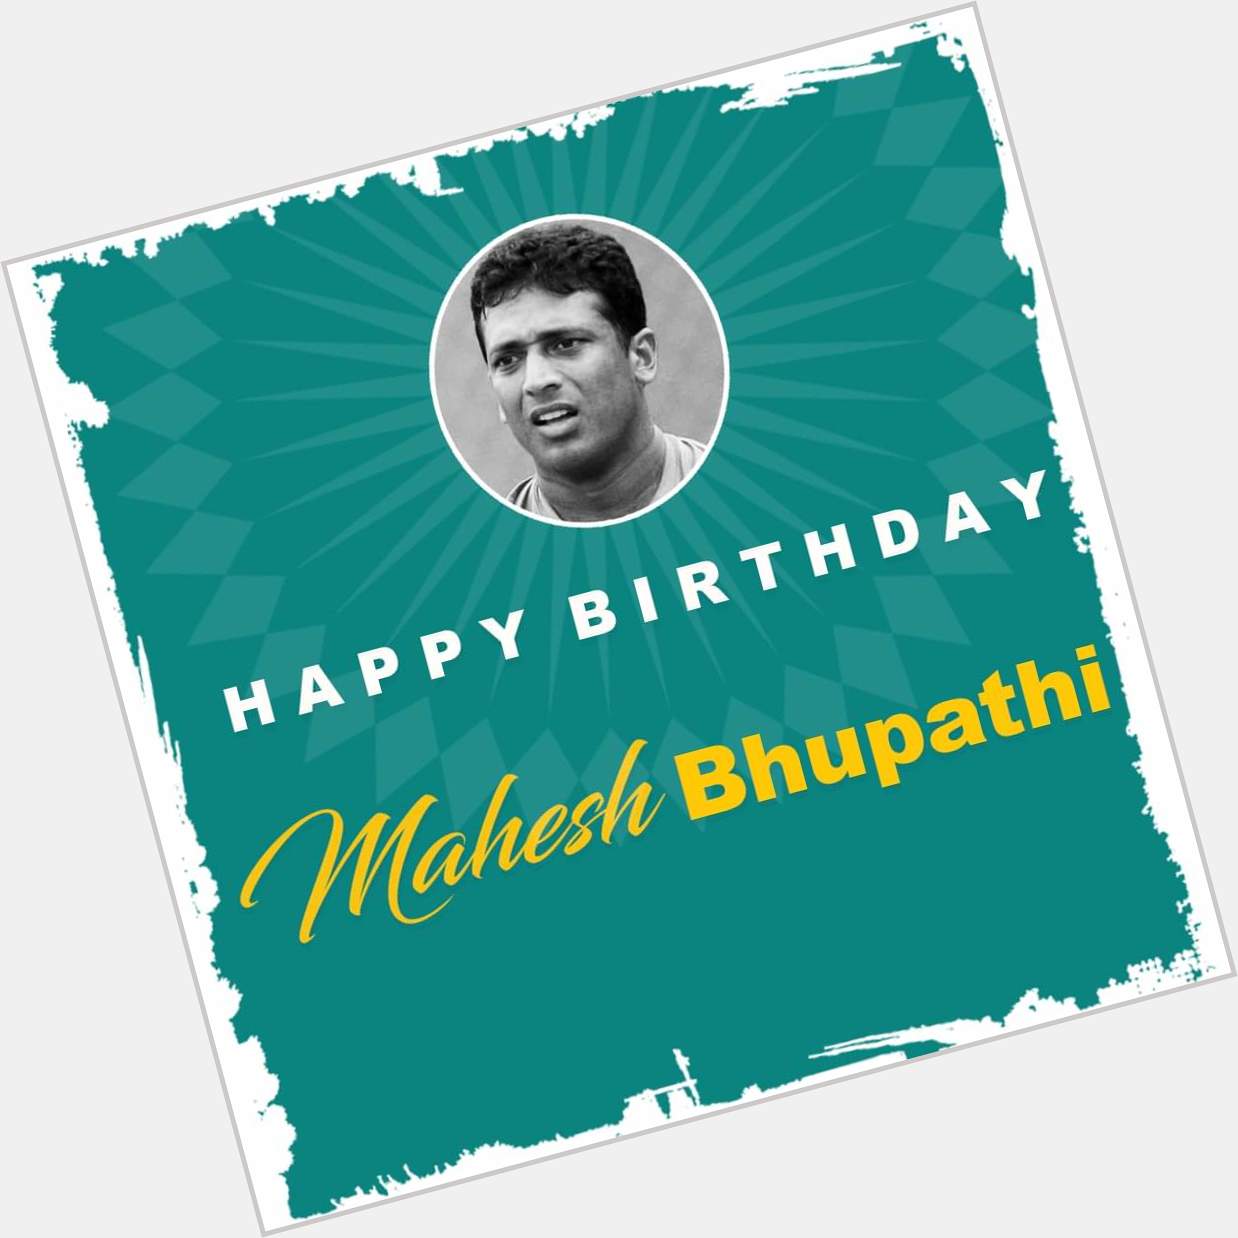 Wishing a very happy birthday to Mahesh Bhupathi 